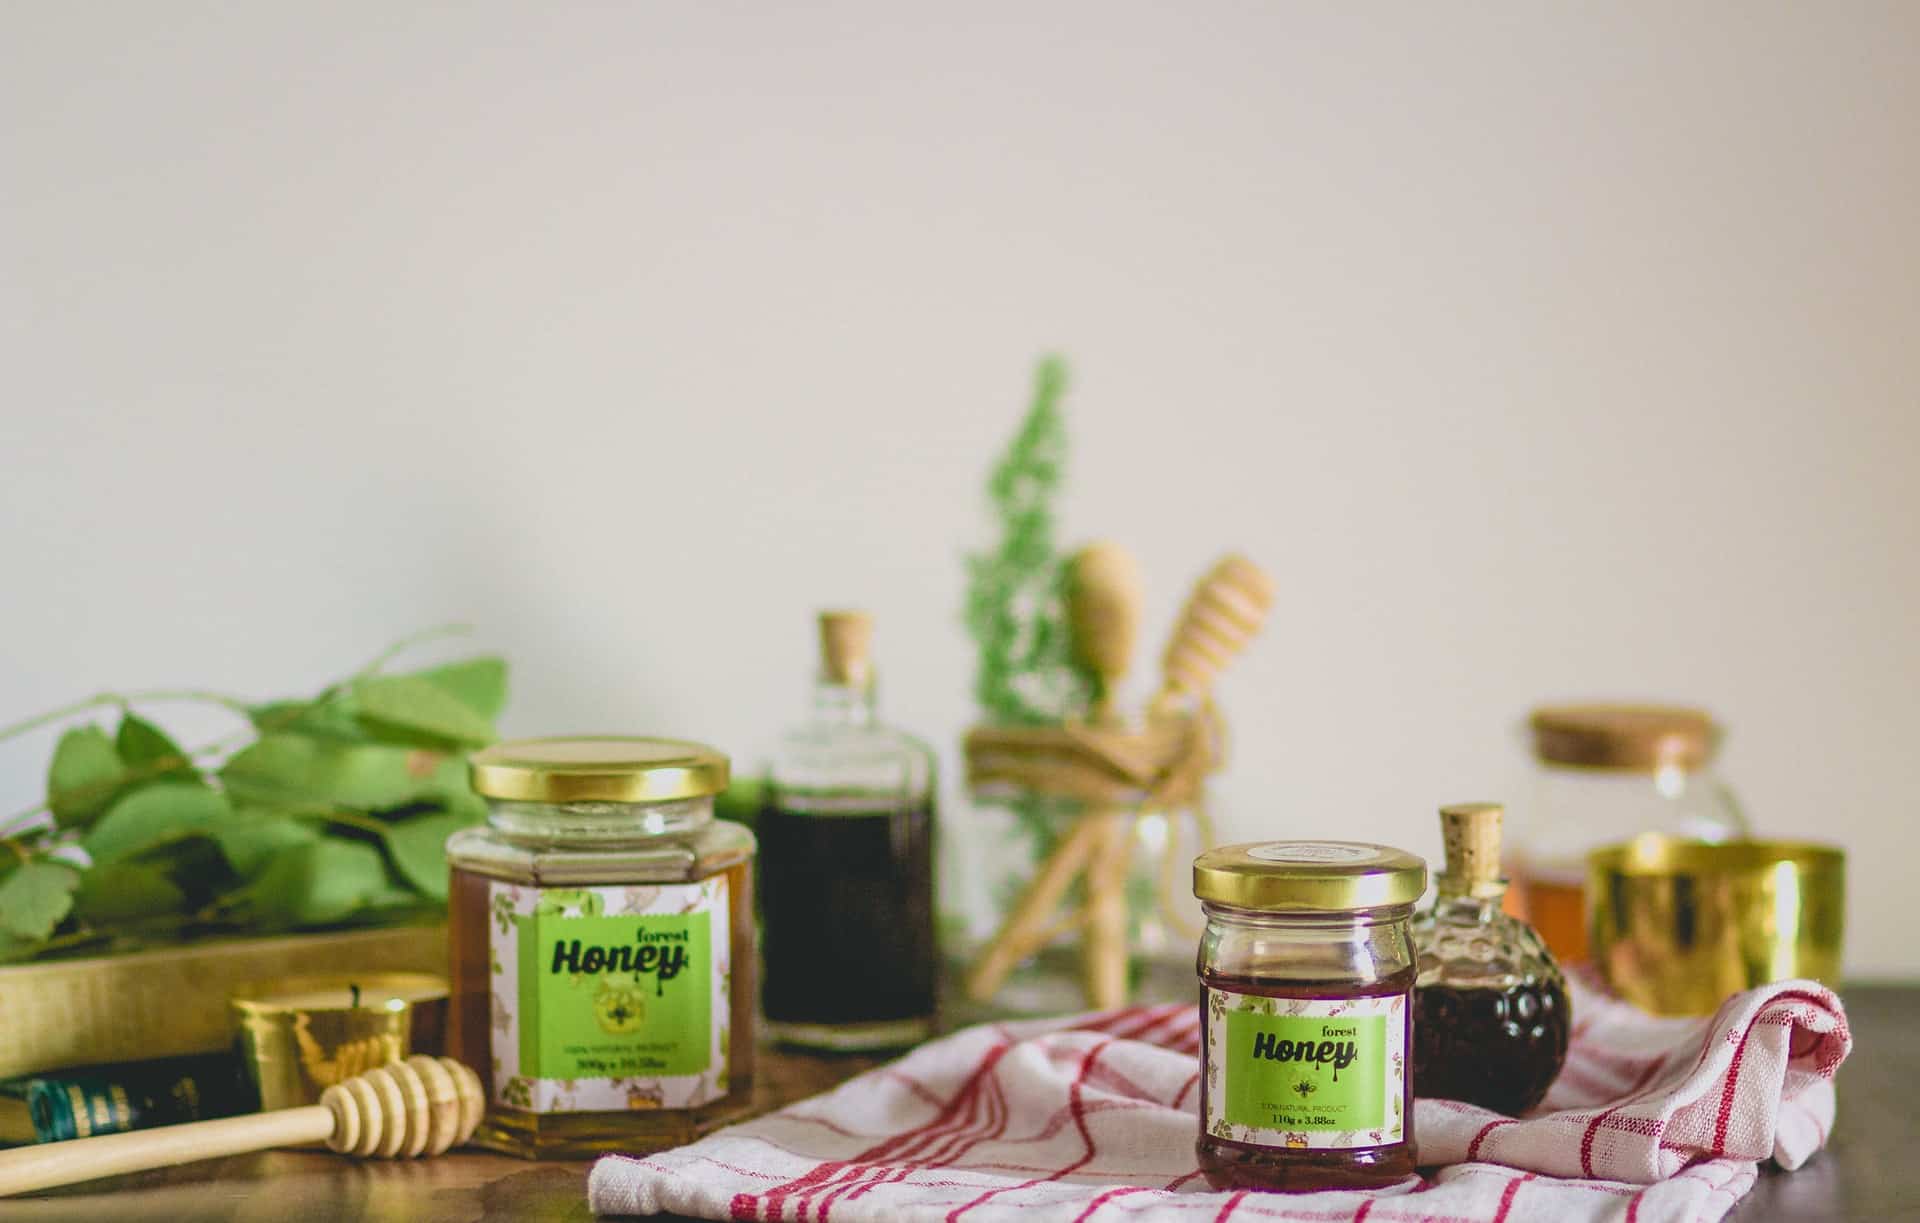 Manuka honey benefits